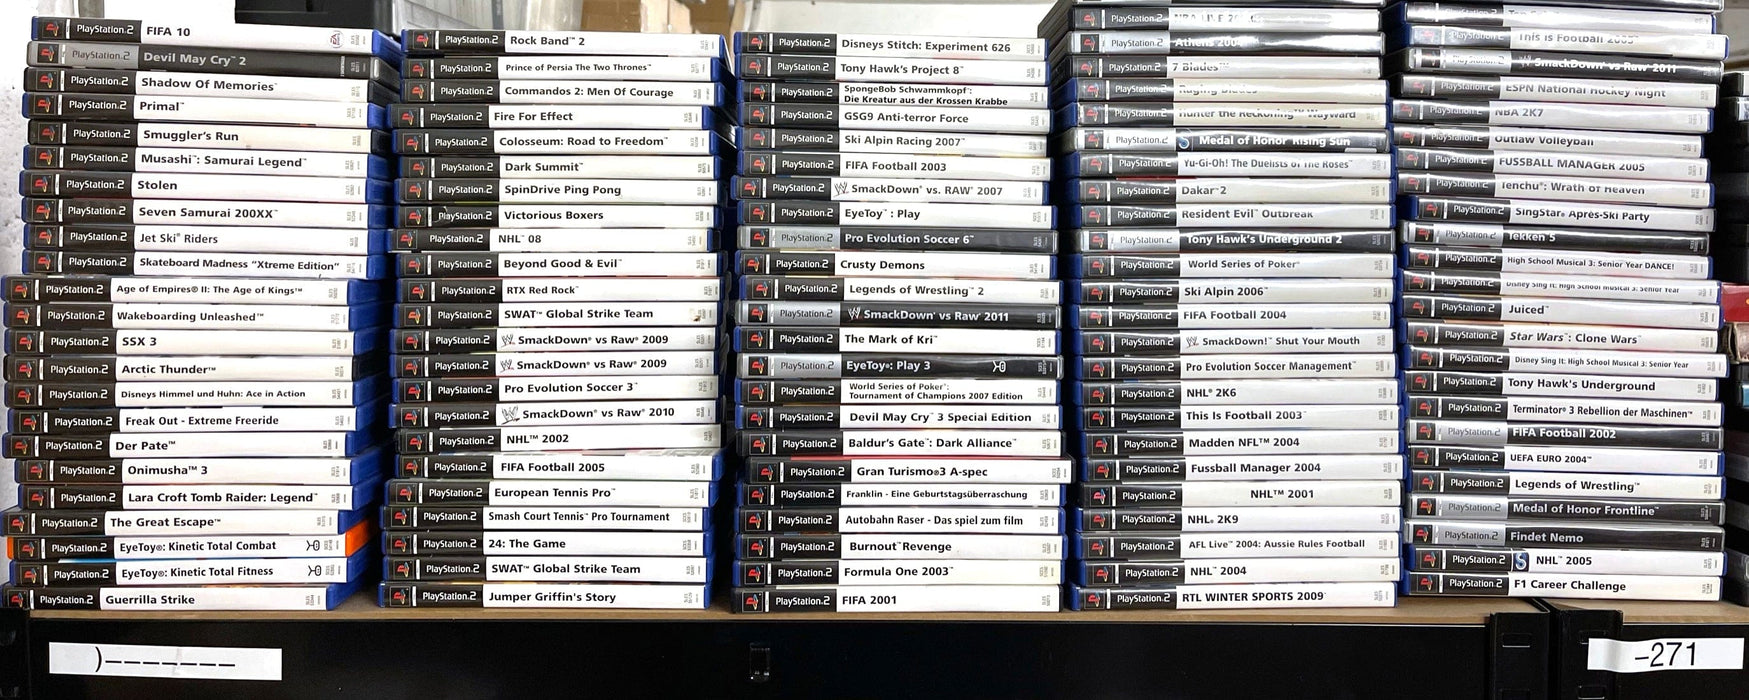 Glaciergames PlayStation 2 Game Der Herr der Ringe: Die Gefährten PlayStation 2 (Nr.999)